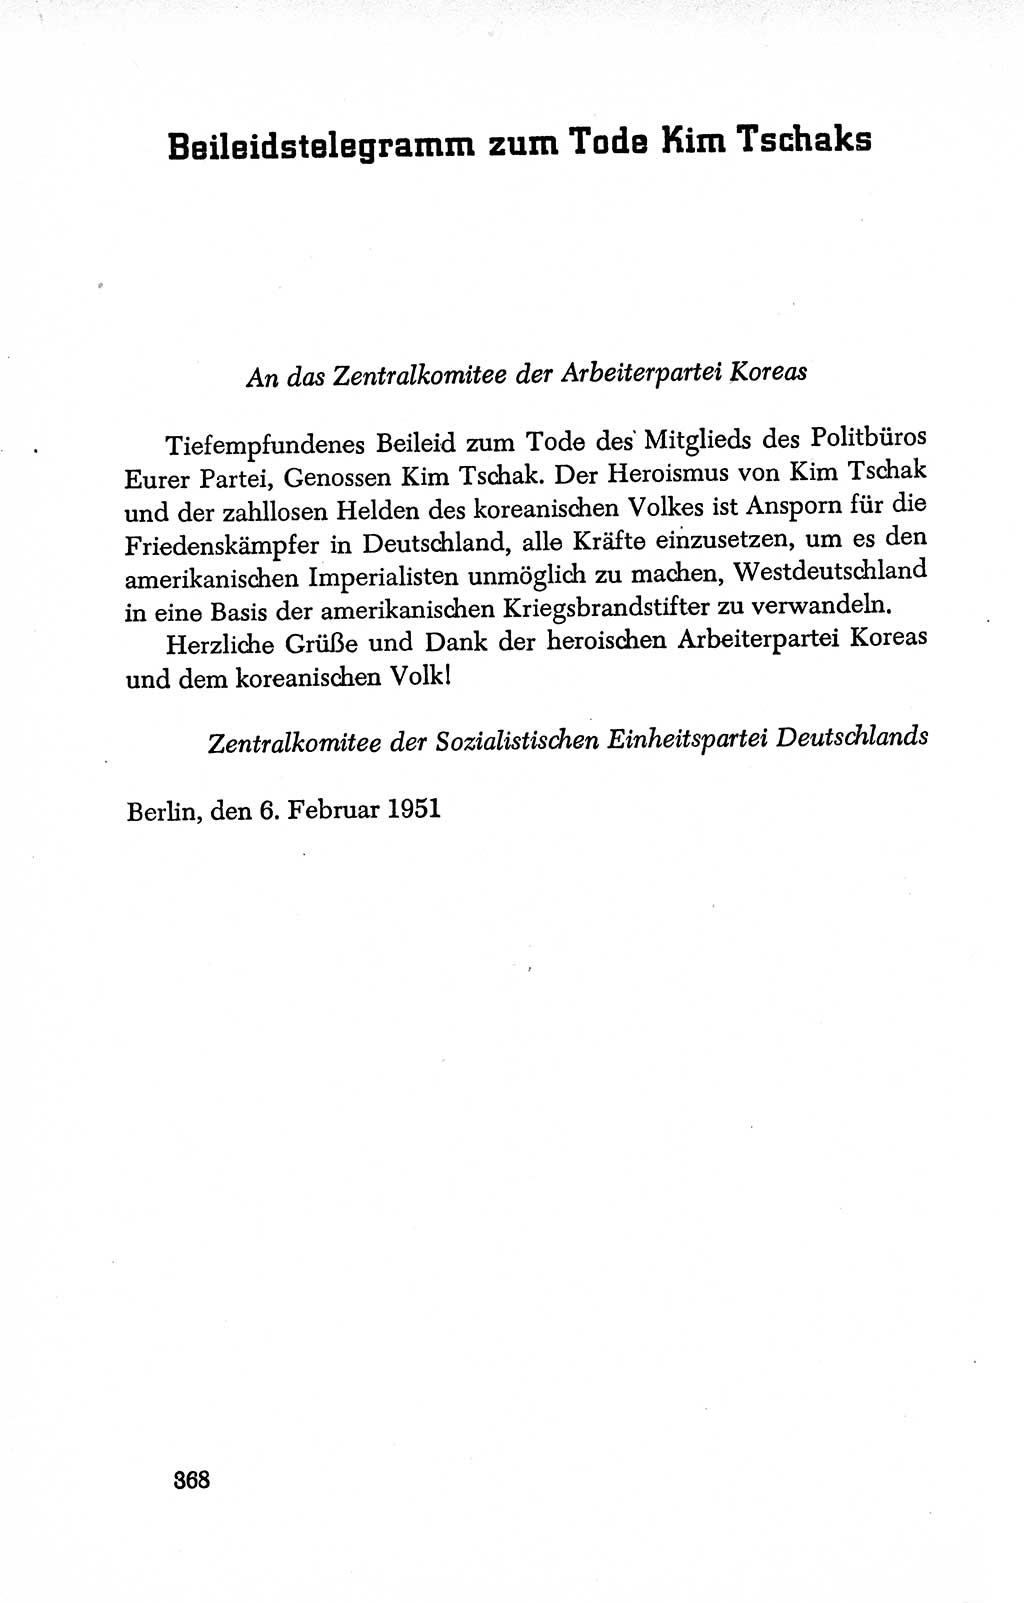 Dokumente der Sozialistischen Einheitspartei Deutschlands (SED) [Deutsche Demokratische Republik (DDR)] 1950-1952, Seite 368 (Dok. SED DDR 1950-1952, S. 368)